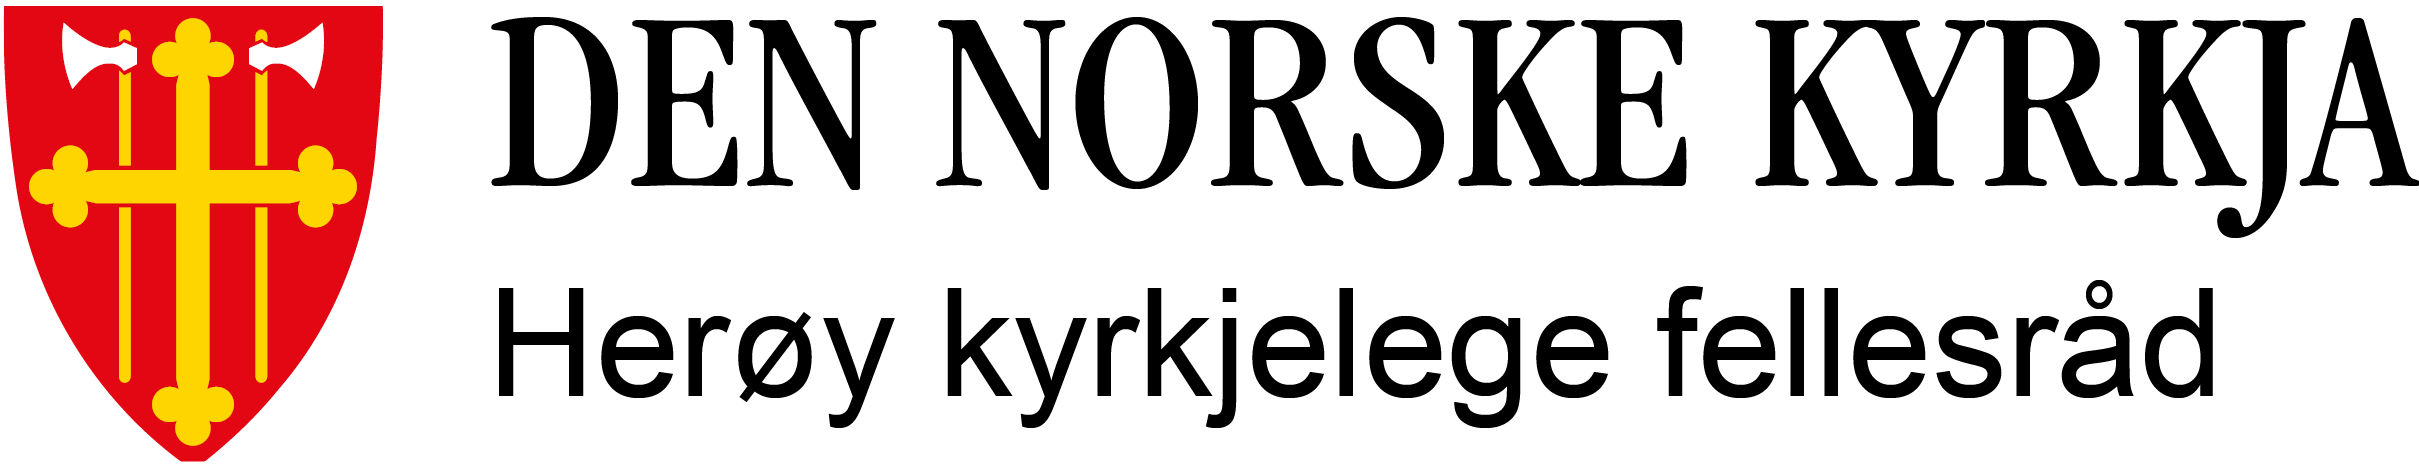 Herøy kyrkjelege fellesråd logo